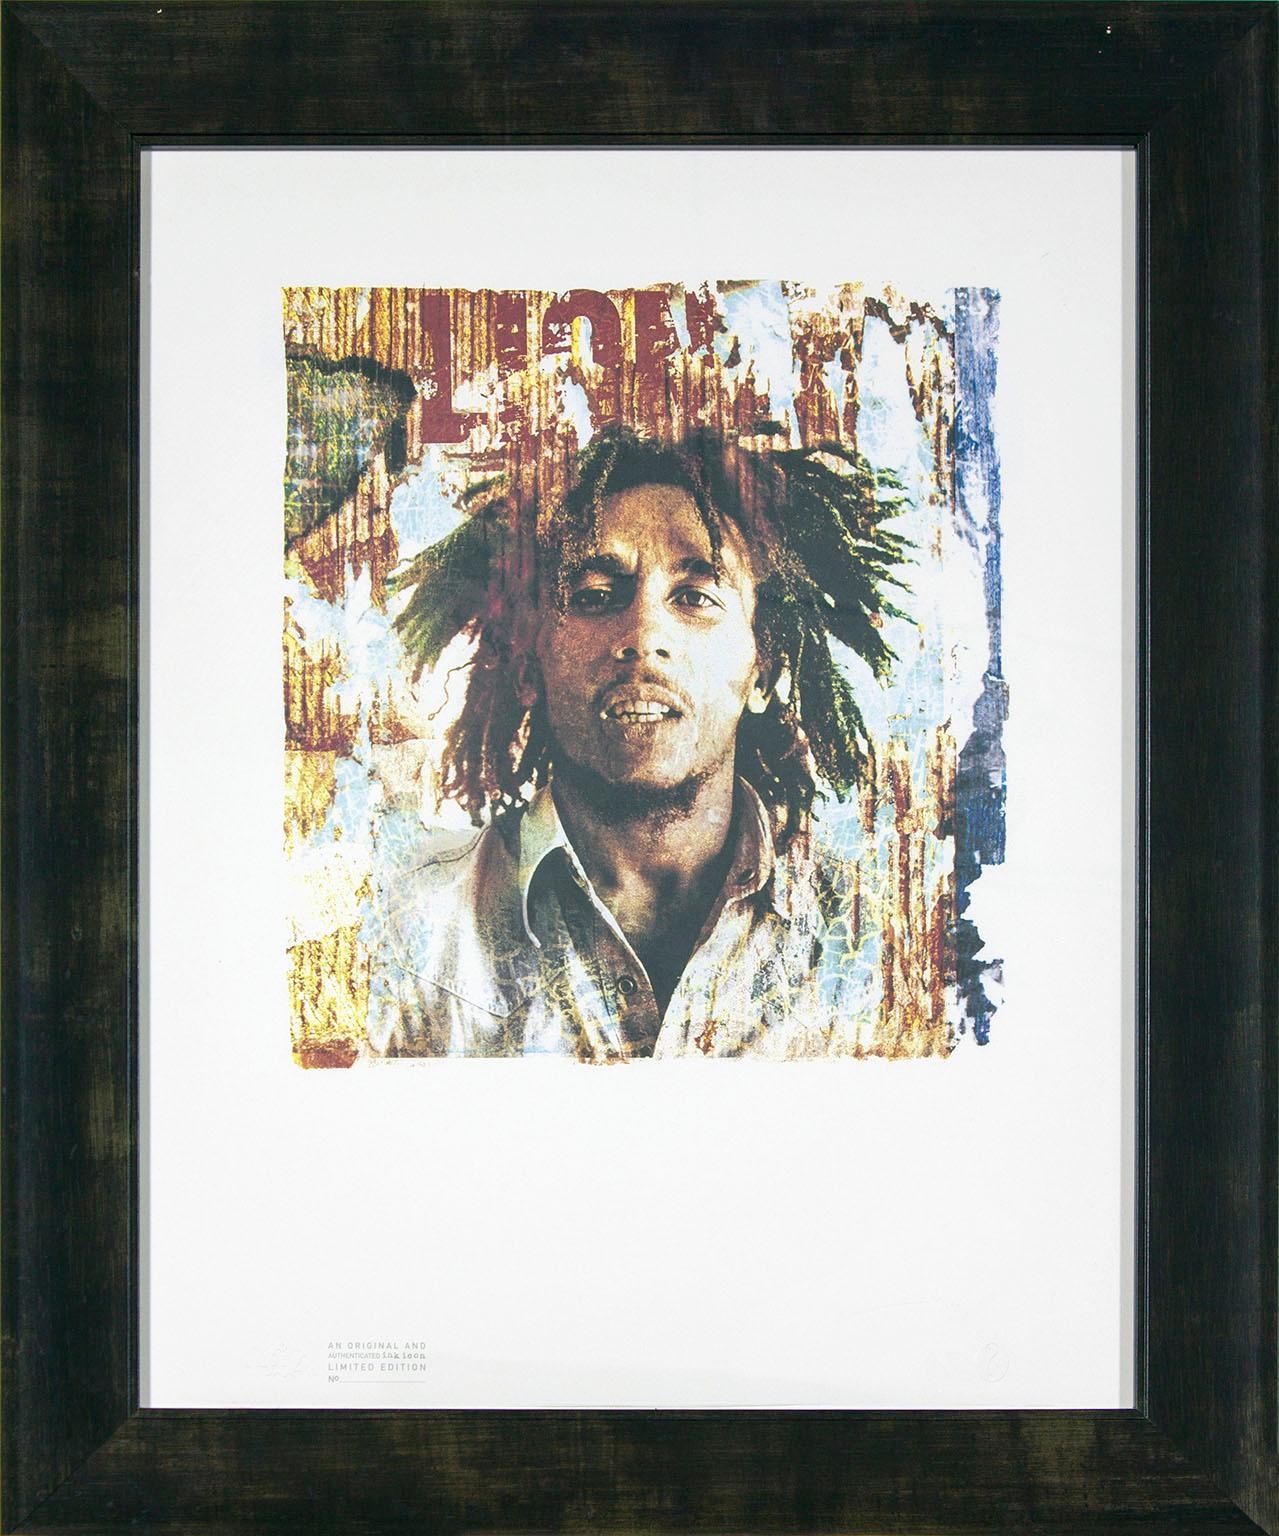 "Bob Marley" Siebdruck in limitierter Auflage des Künstlers Gered Mankowitz. Bildgröße: 17 x 15 Zoll. Prägung mit Stempel unten links und ? Stempel unten rechts. "Ein originales und authentifiziertes Tintensymbol, limitierte Auflage Nr.",